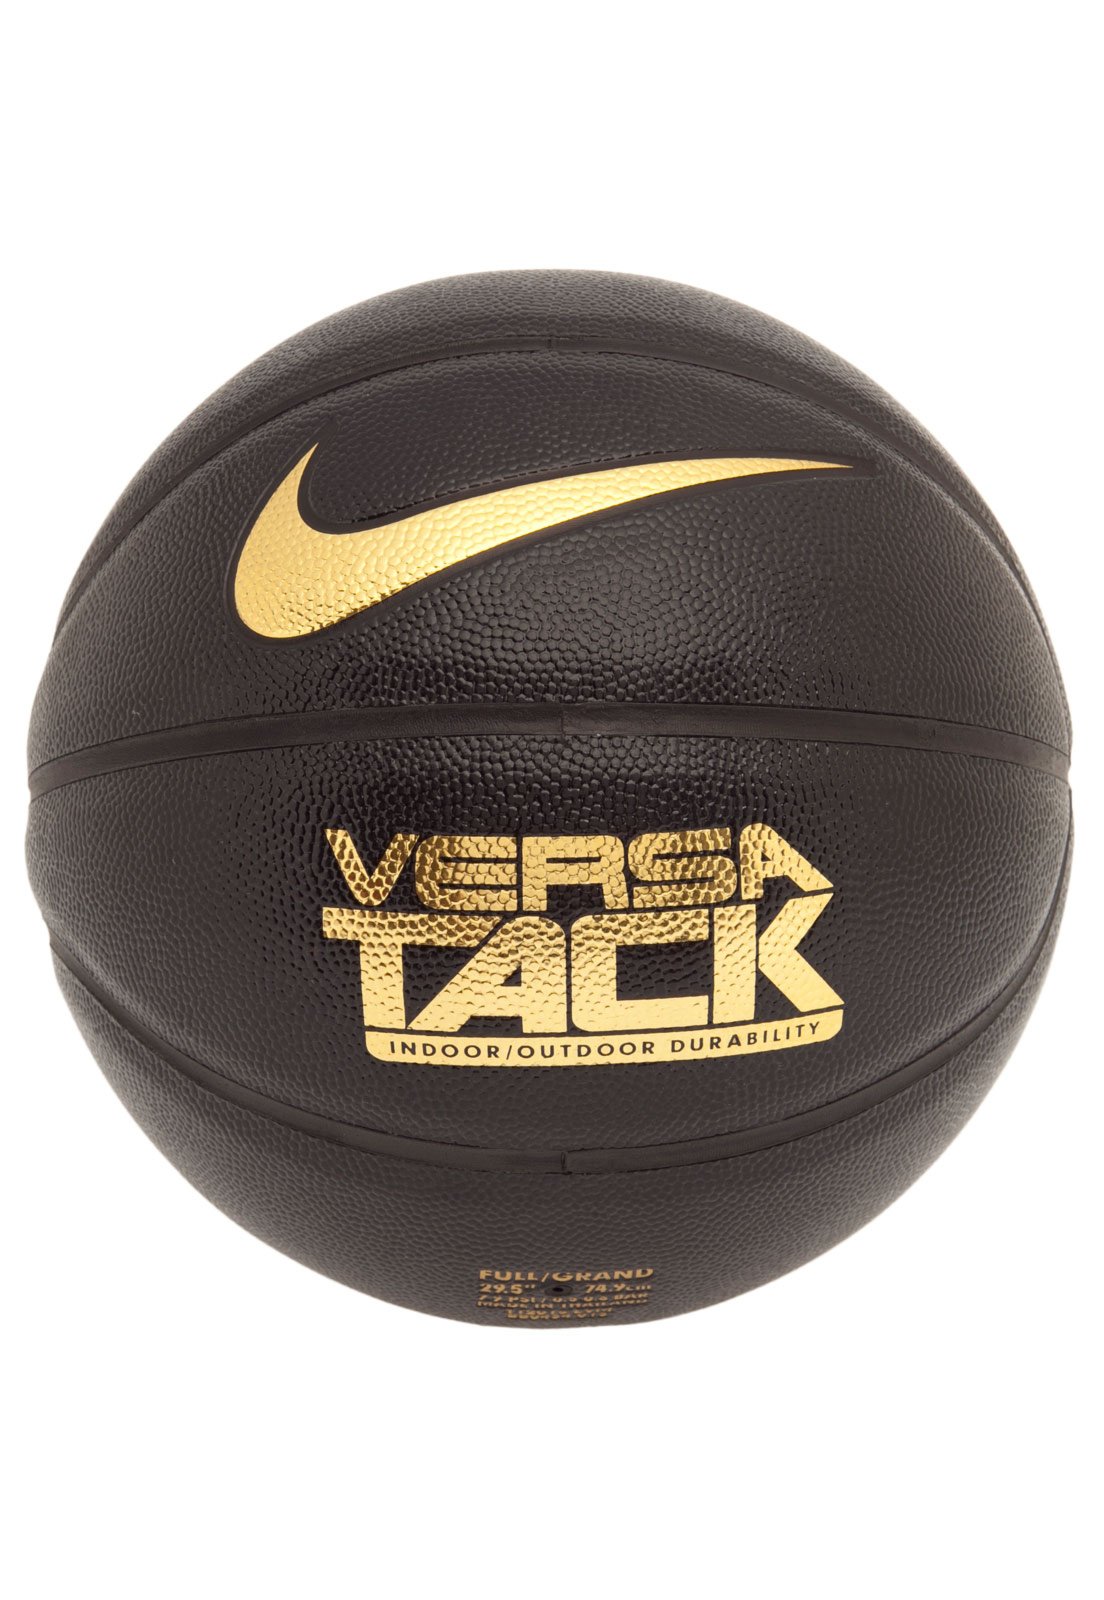 Bola Basquete Nike Versa Tack 7 > Preta e Dourada >